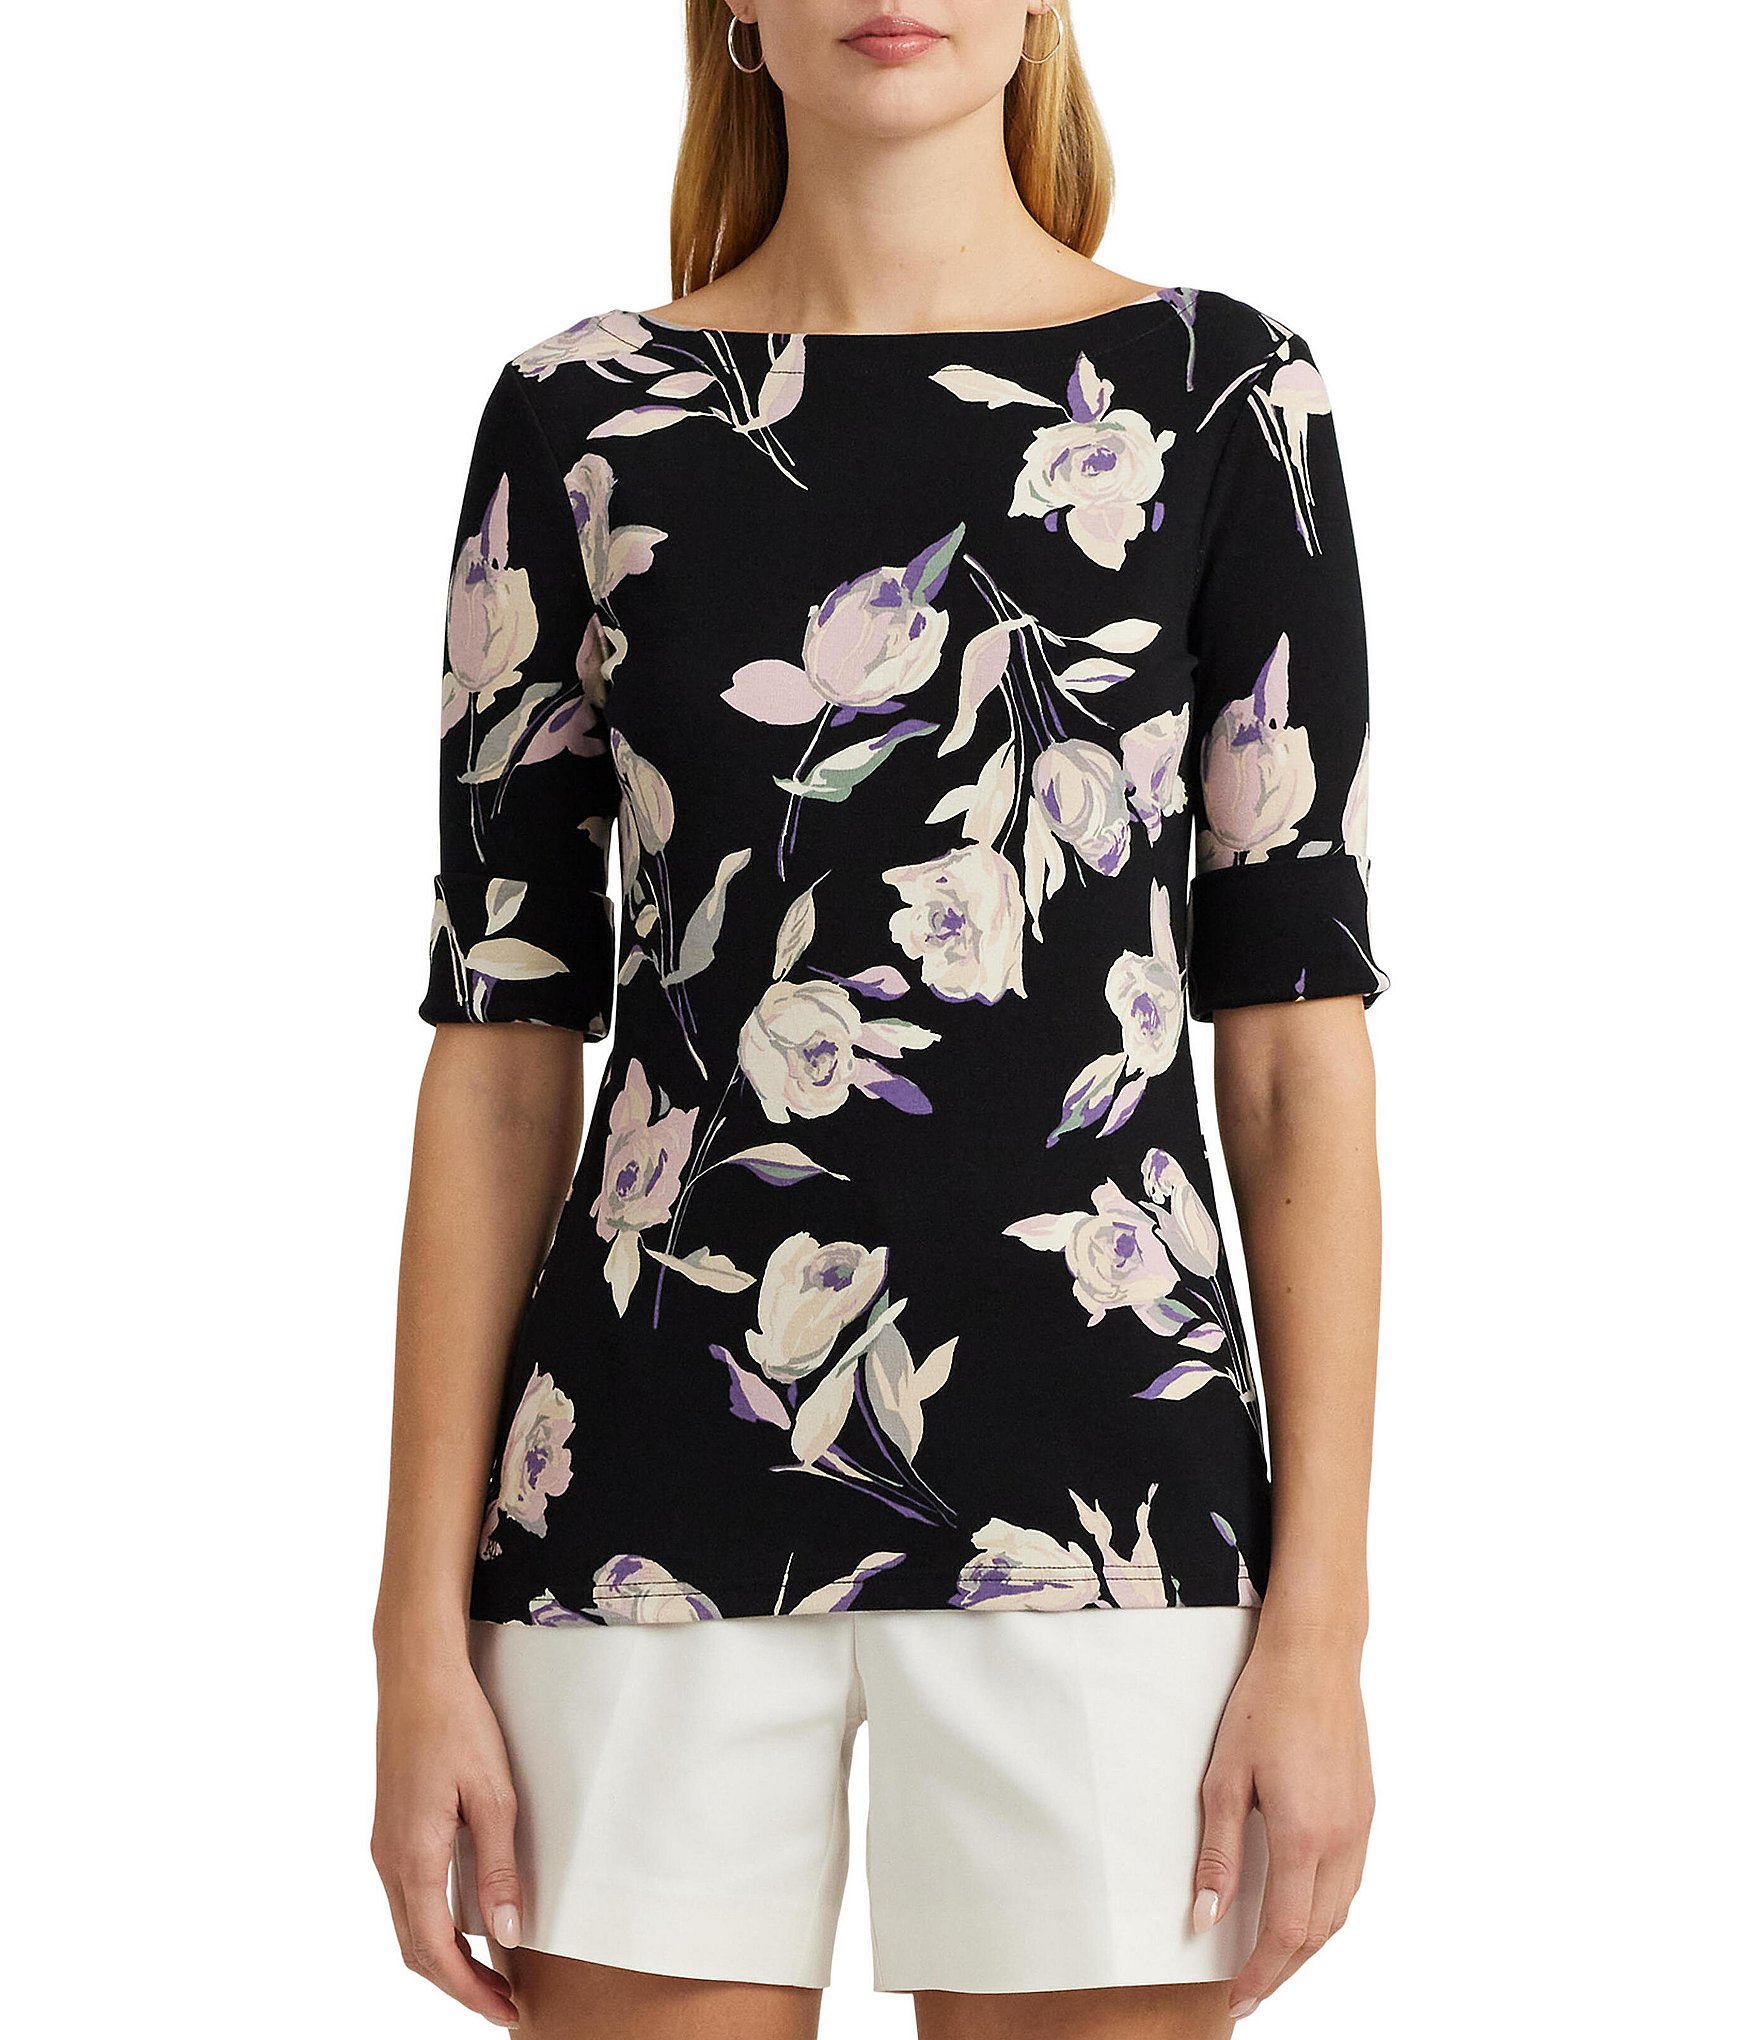 Ralph Lauren Lauren T-Shirt Top Size Small Black White Floral 100% Linen  Womens - $19 - From Ben